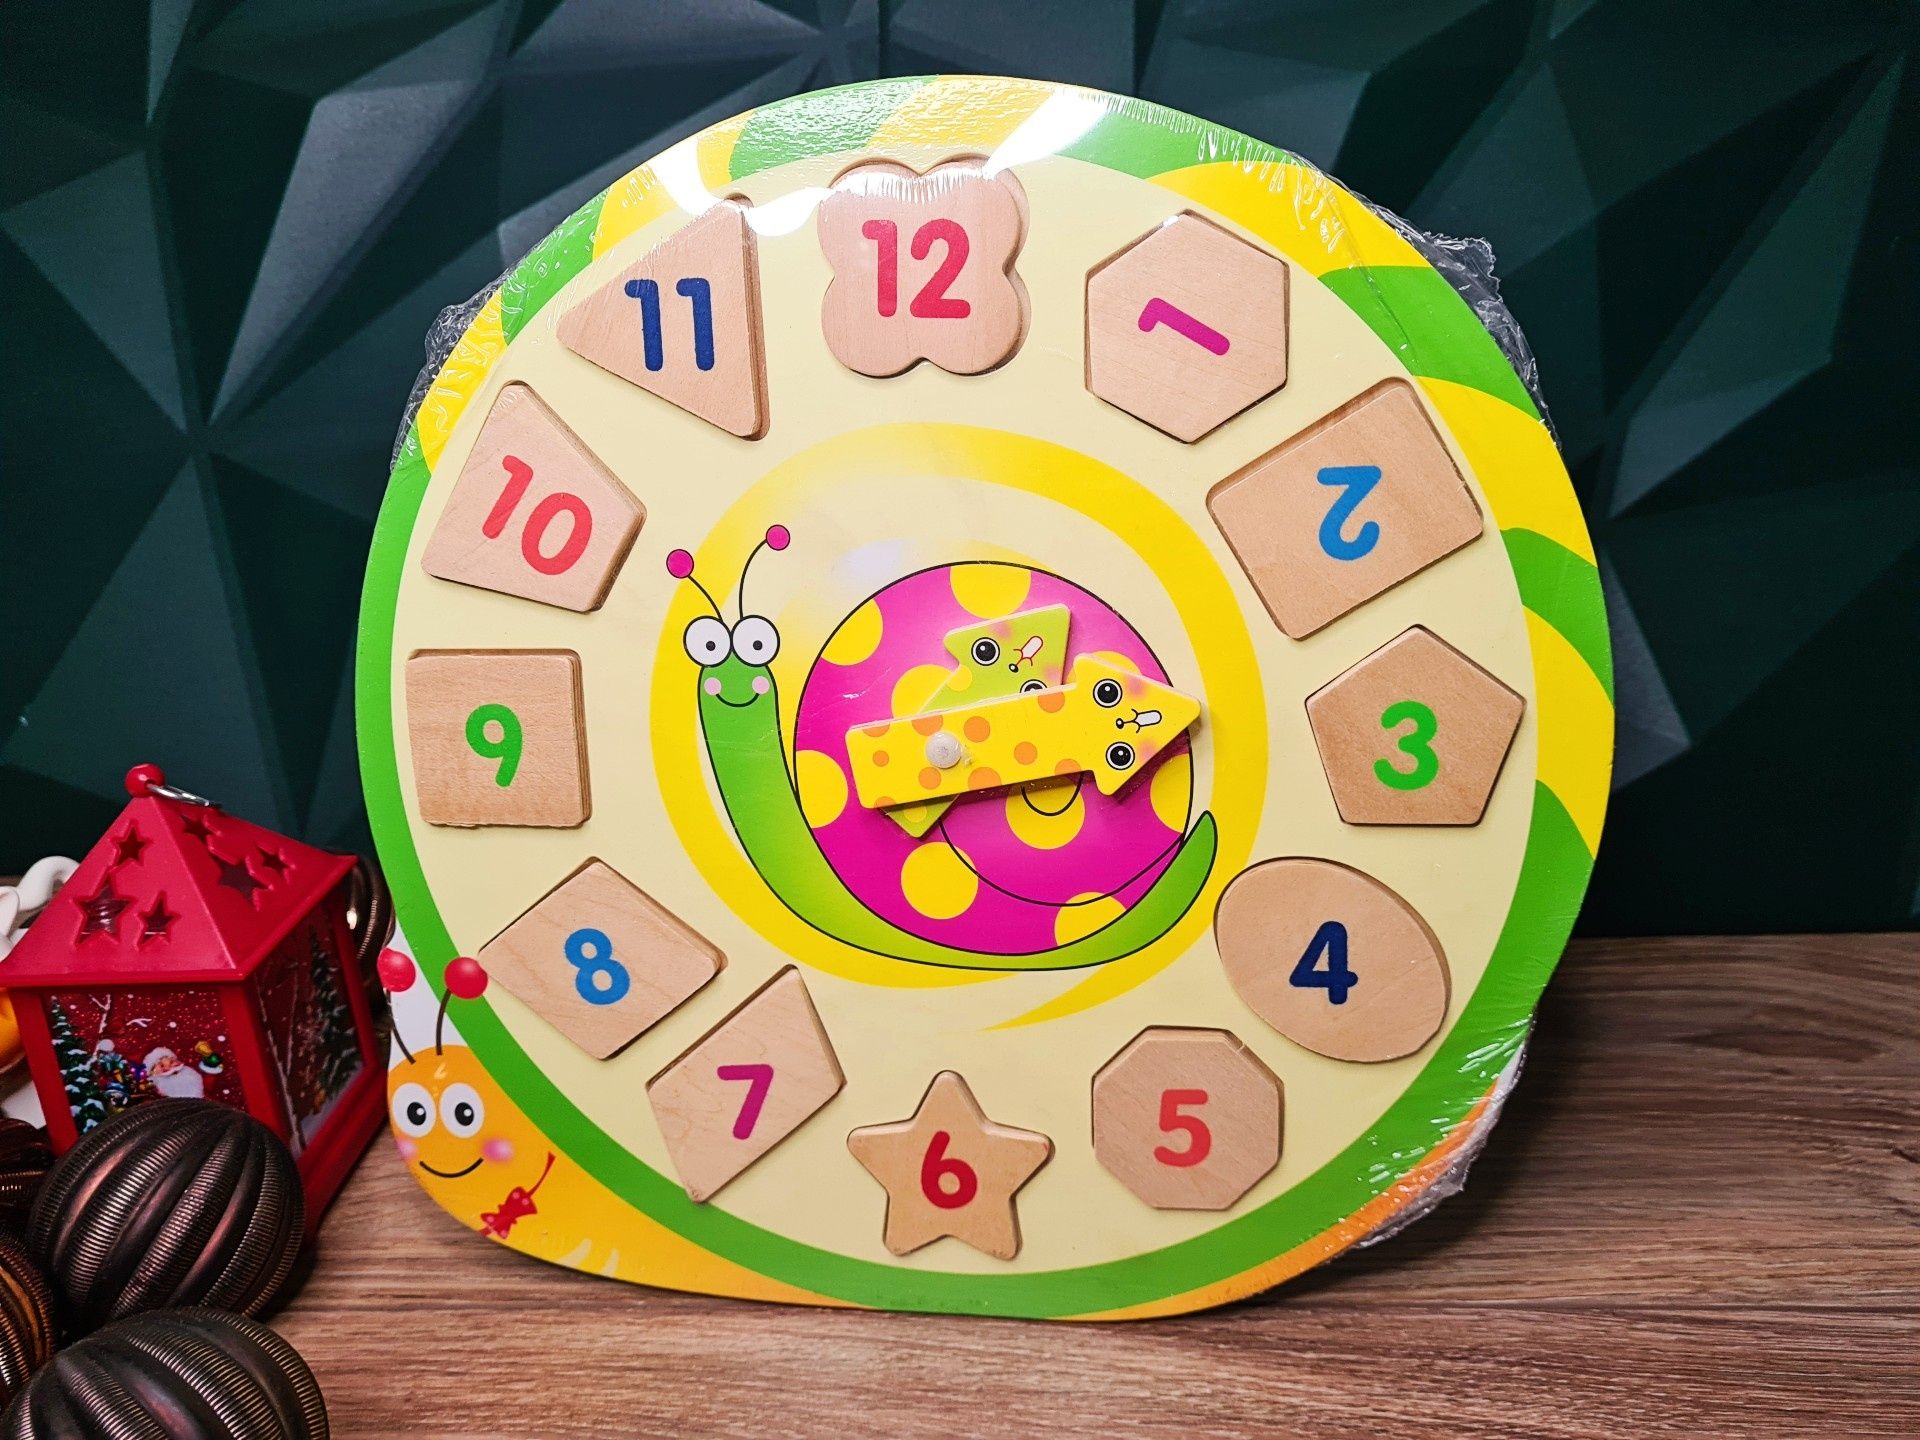 Nowy drewniany zegar Ślimaczek do nauki godzin - zabawki